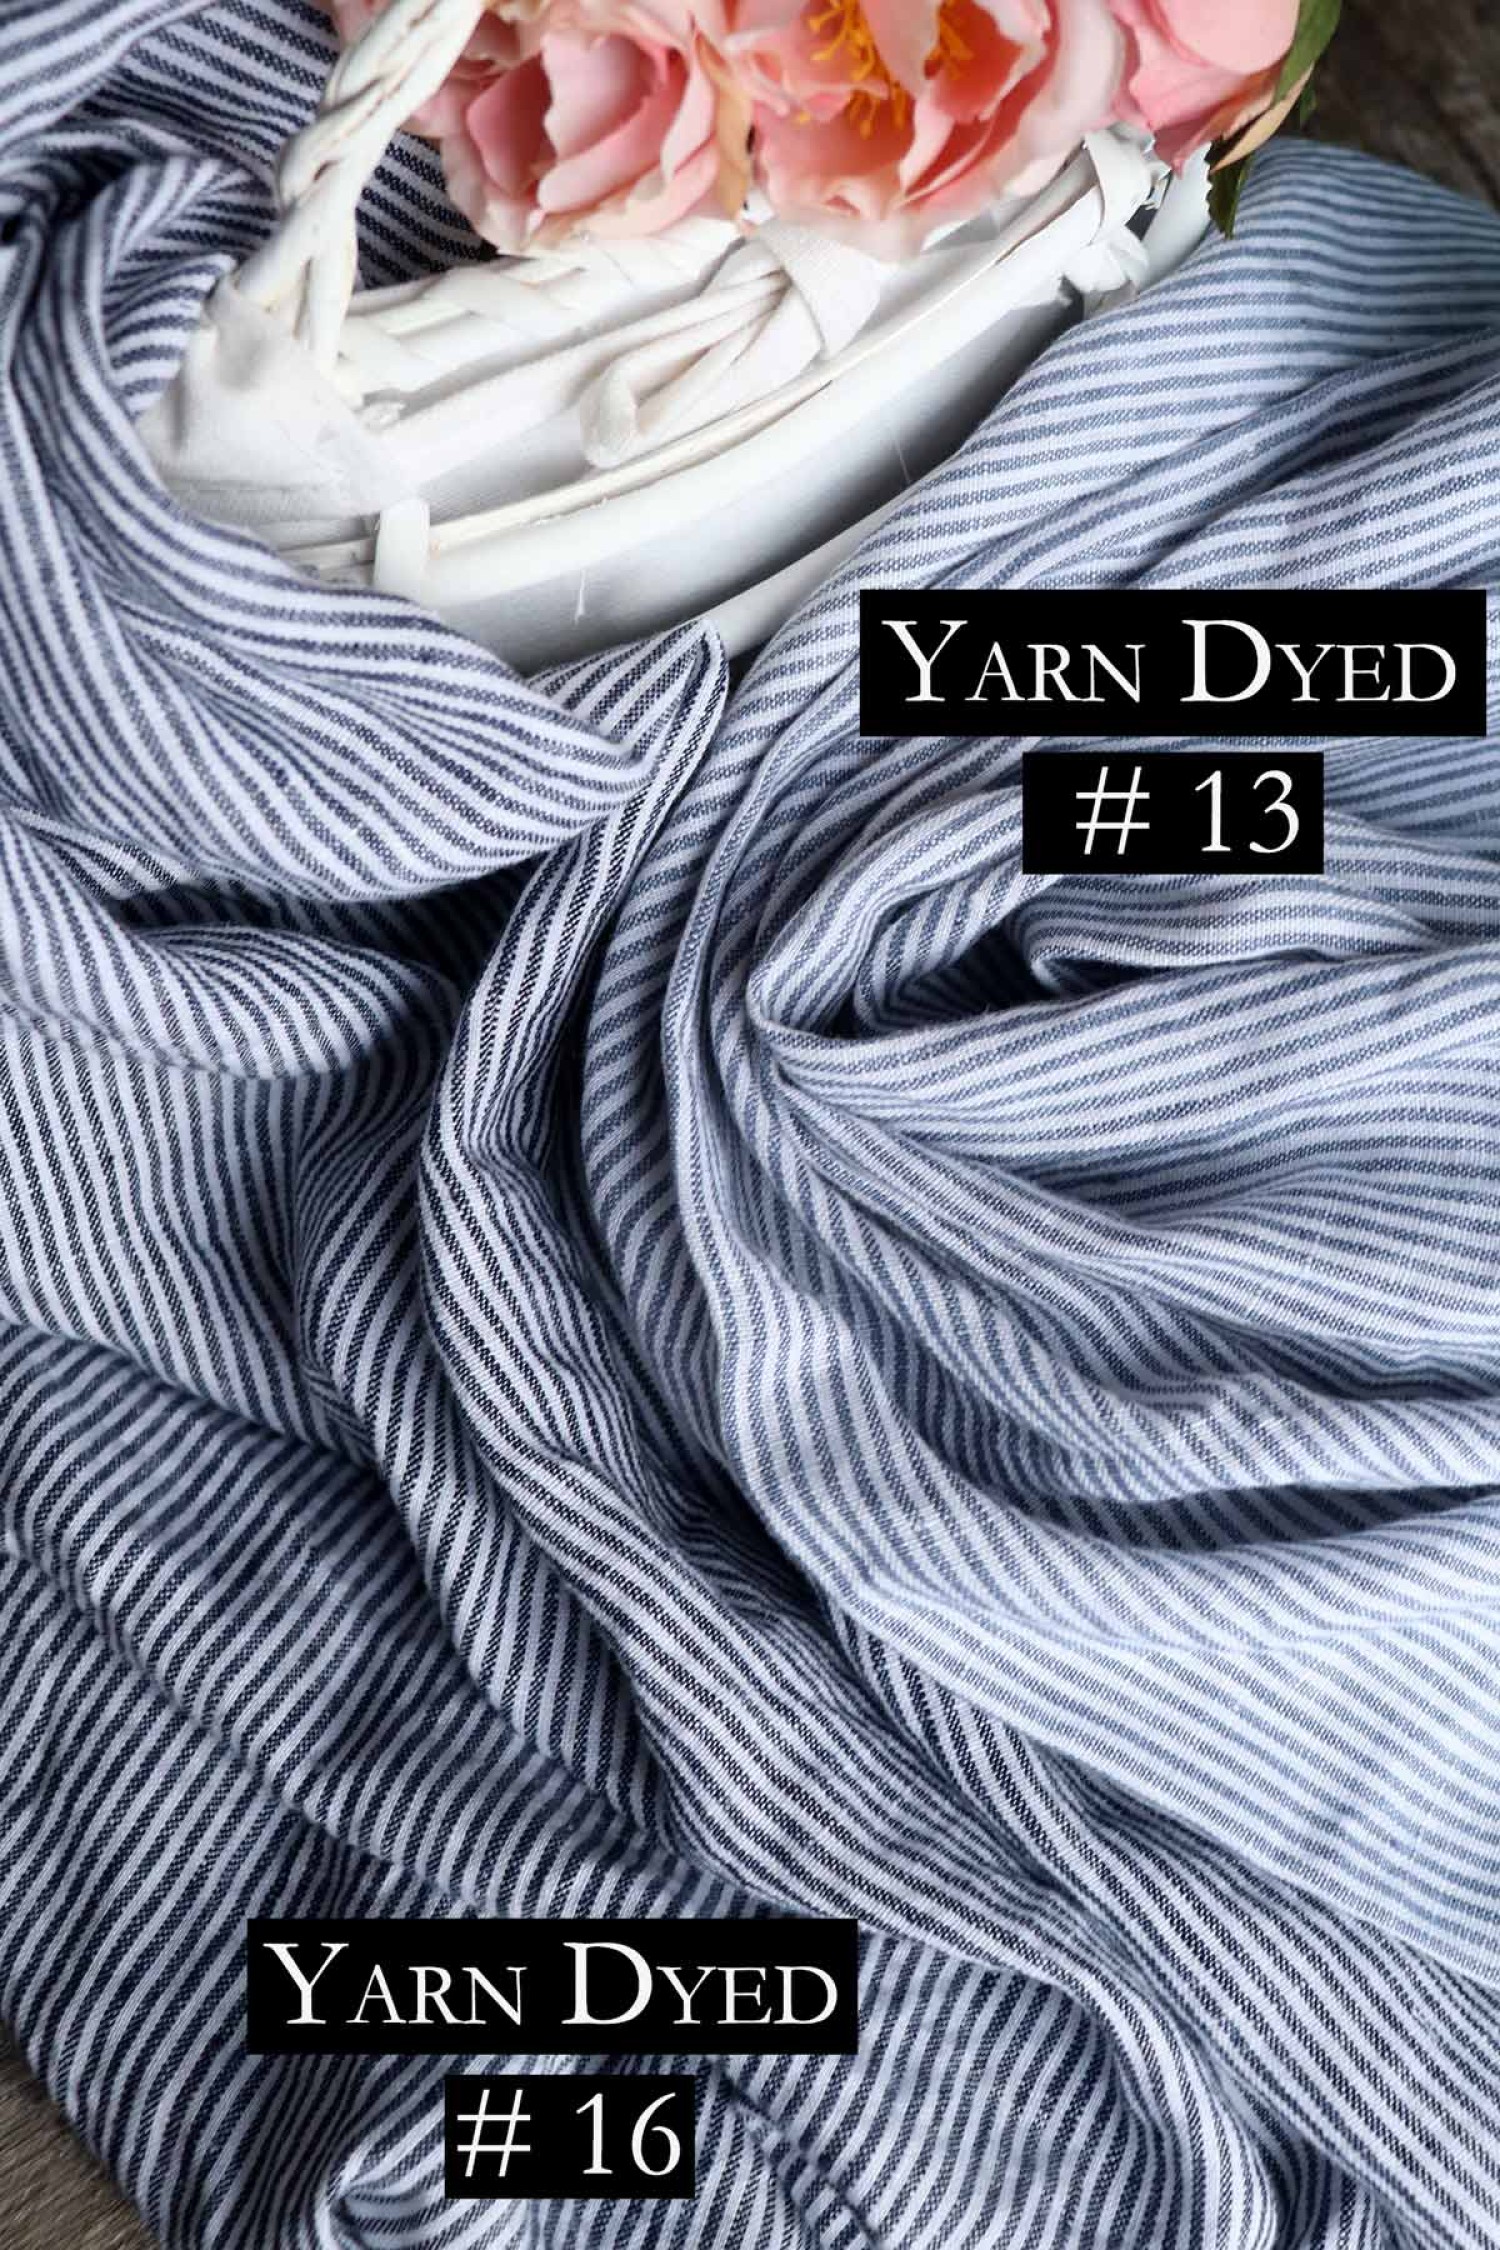 Yarn Dyed # 16